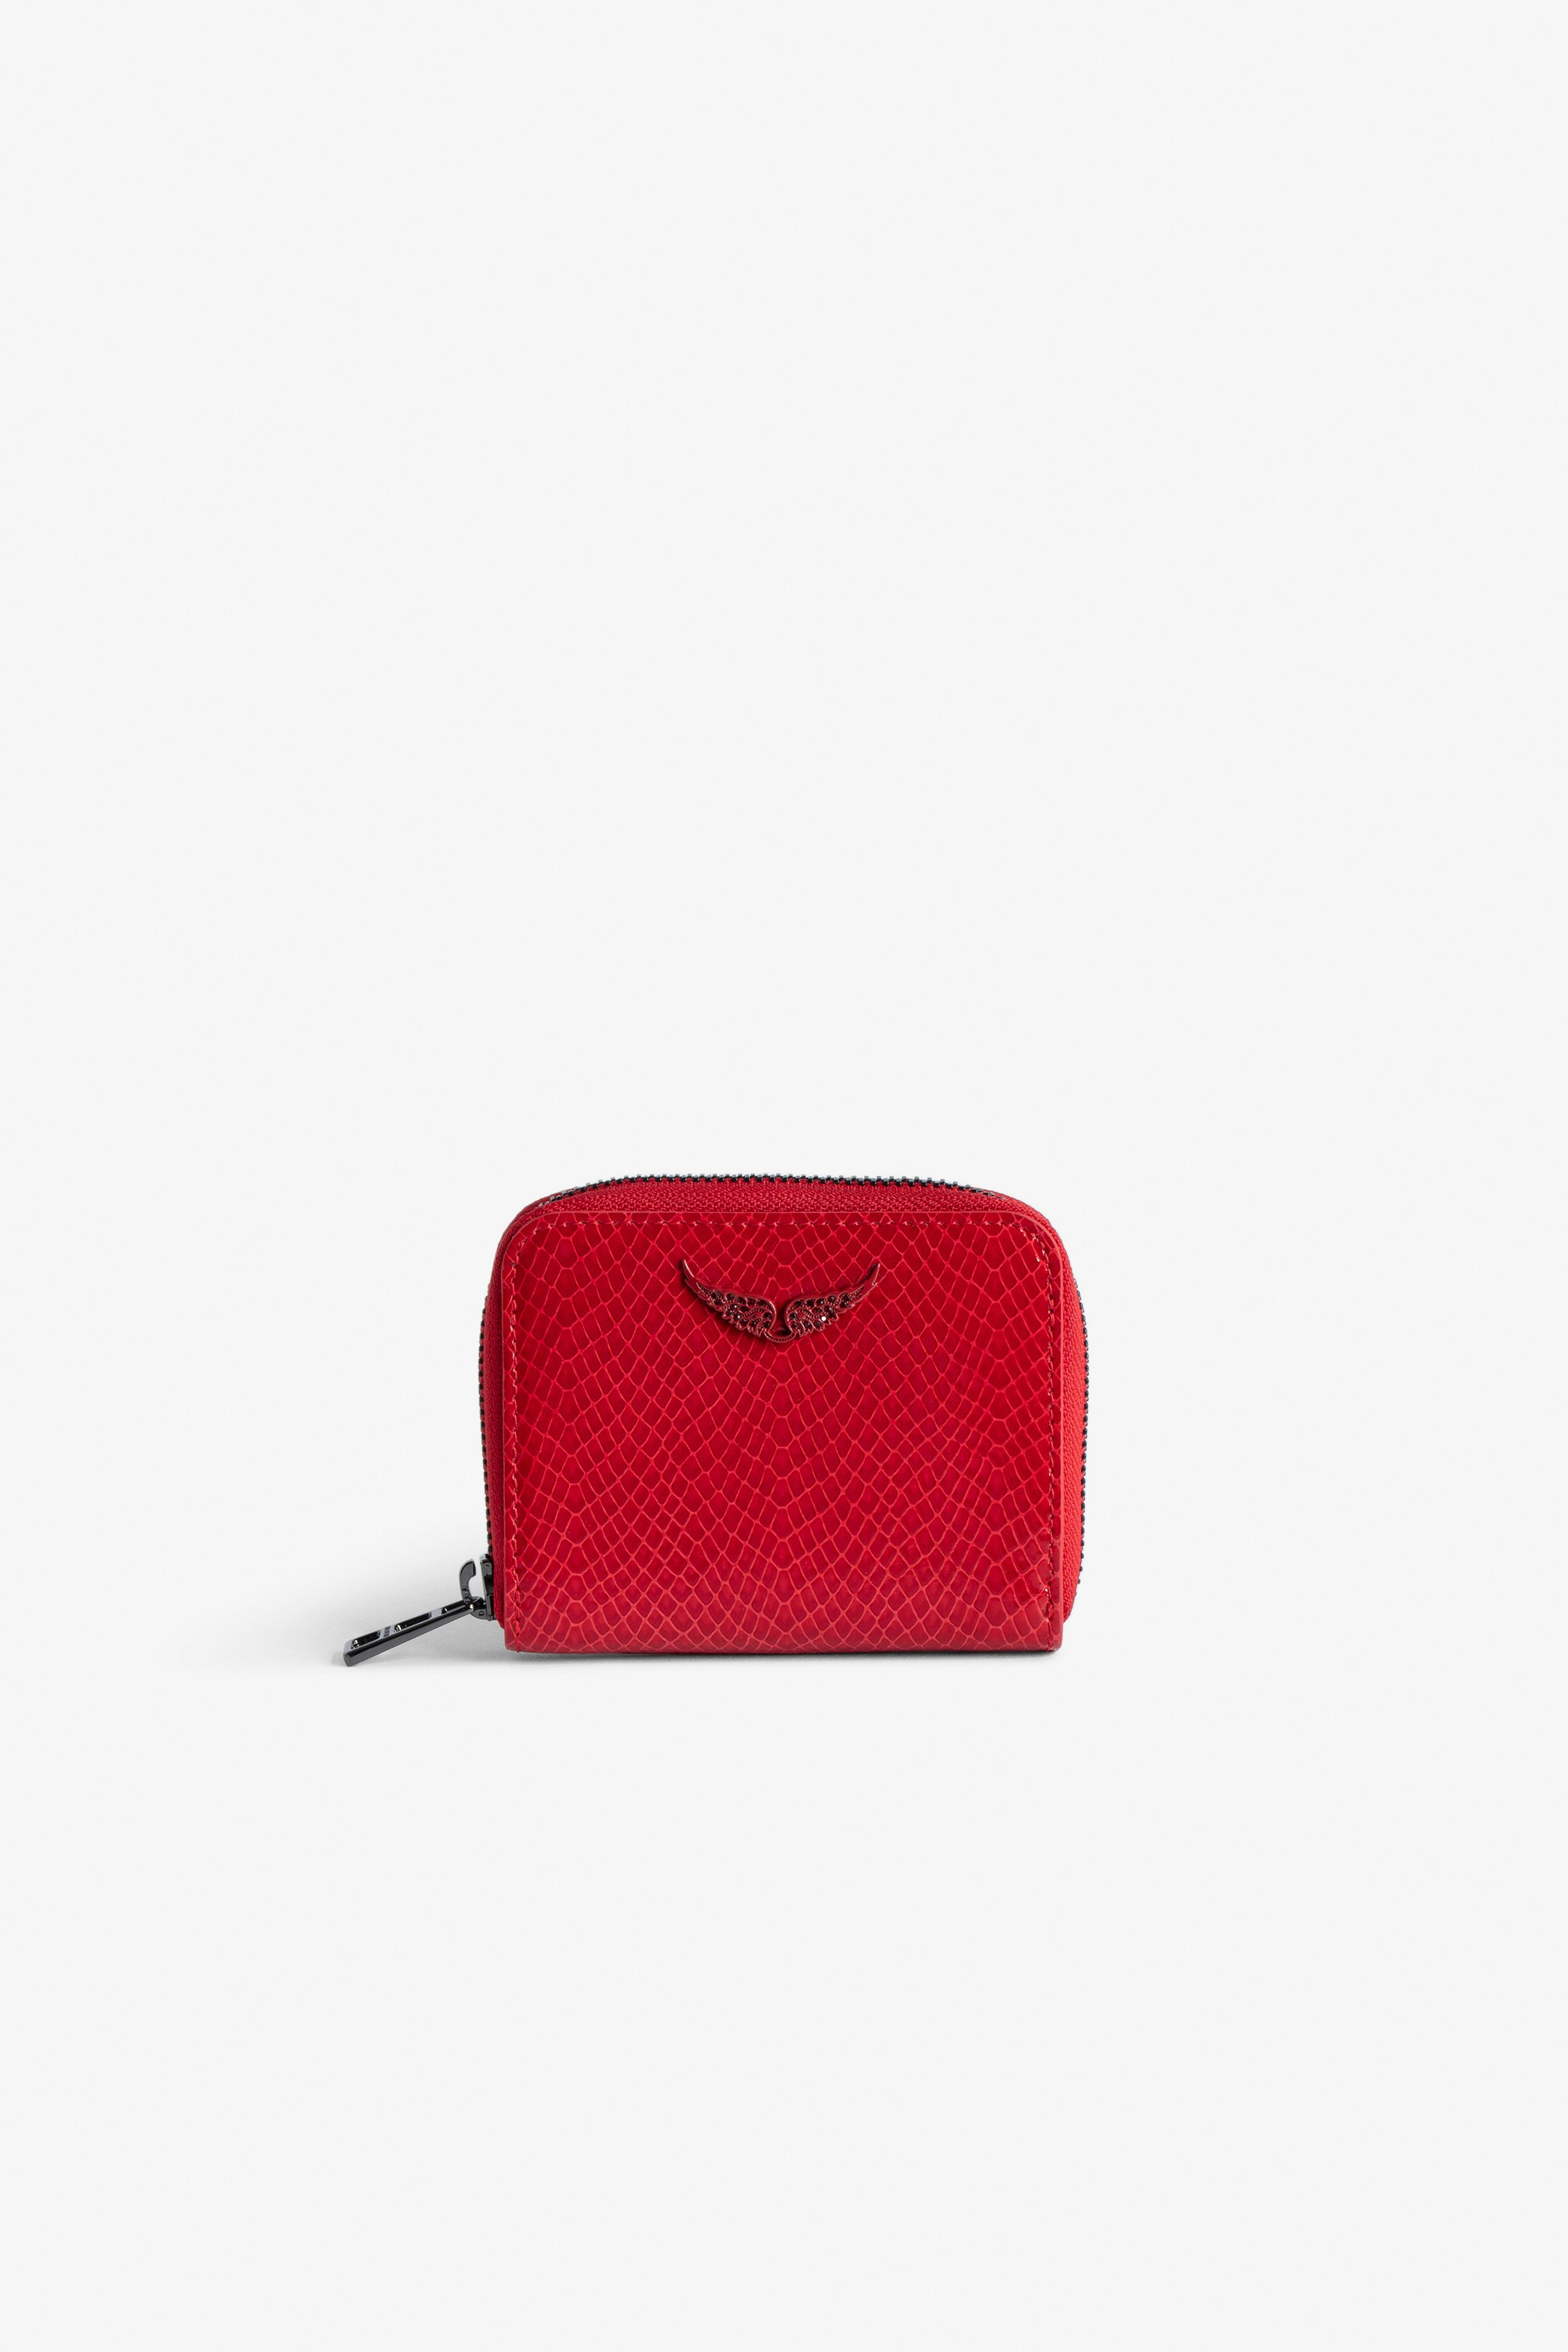 Portamonete Mini ZV Glossy Wild Goffrato - Portafoglio in pelle lucida rosso effetto pitone con charm ali in strass da donna.